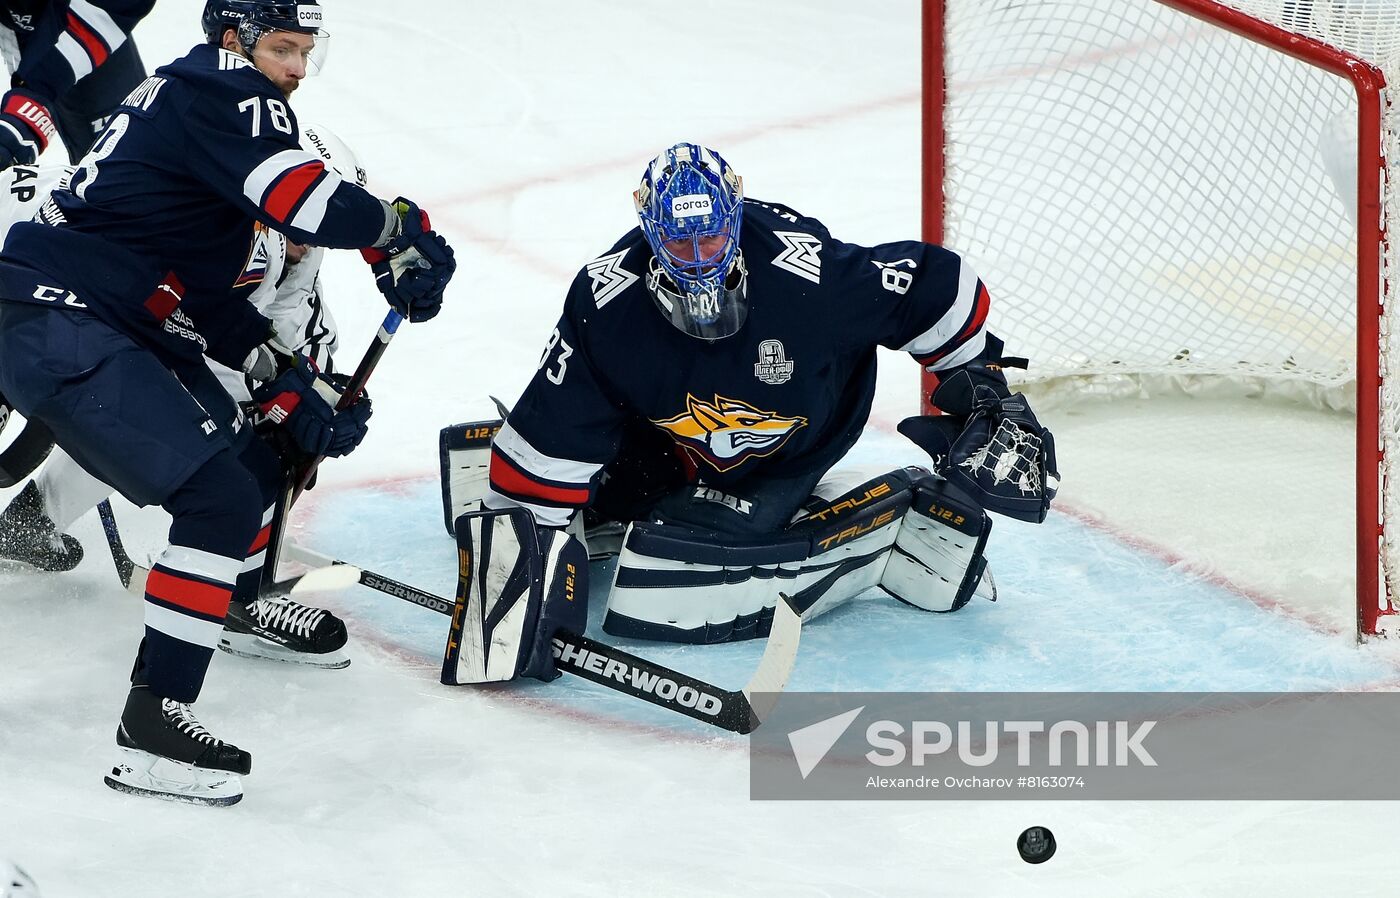 Russia Ice Hockey Kontinental League Metallurg - Traktor